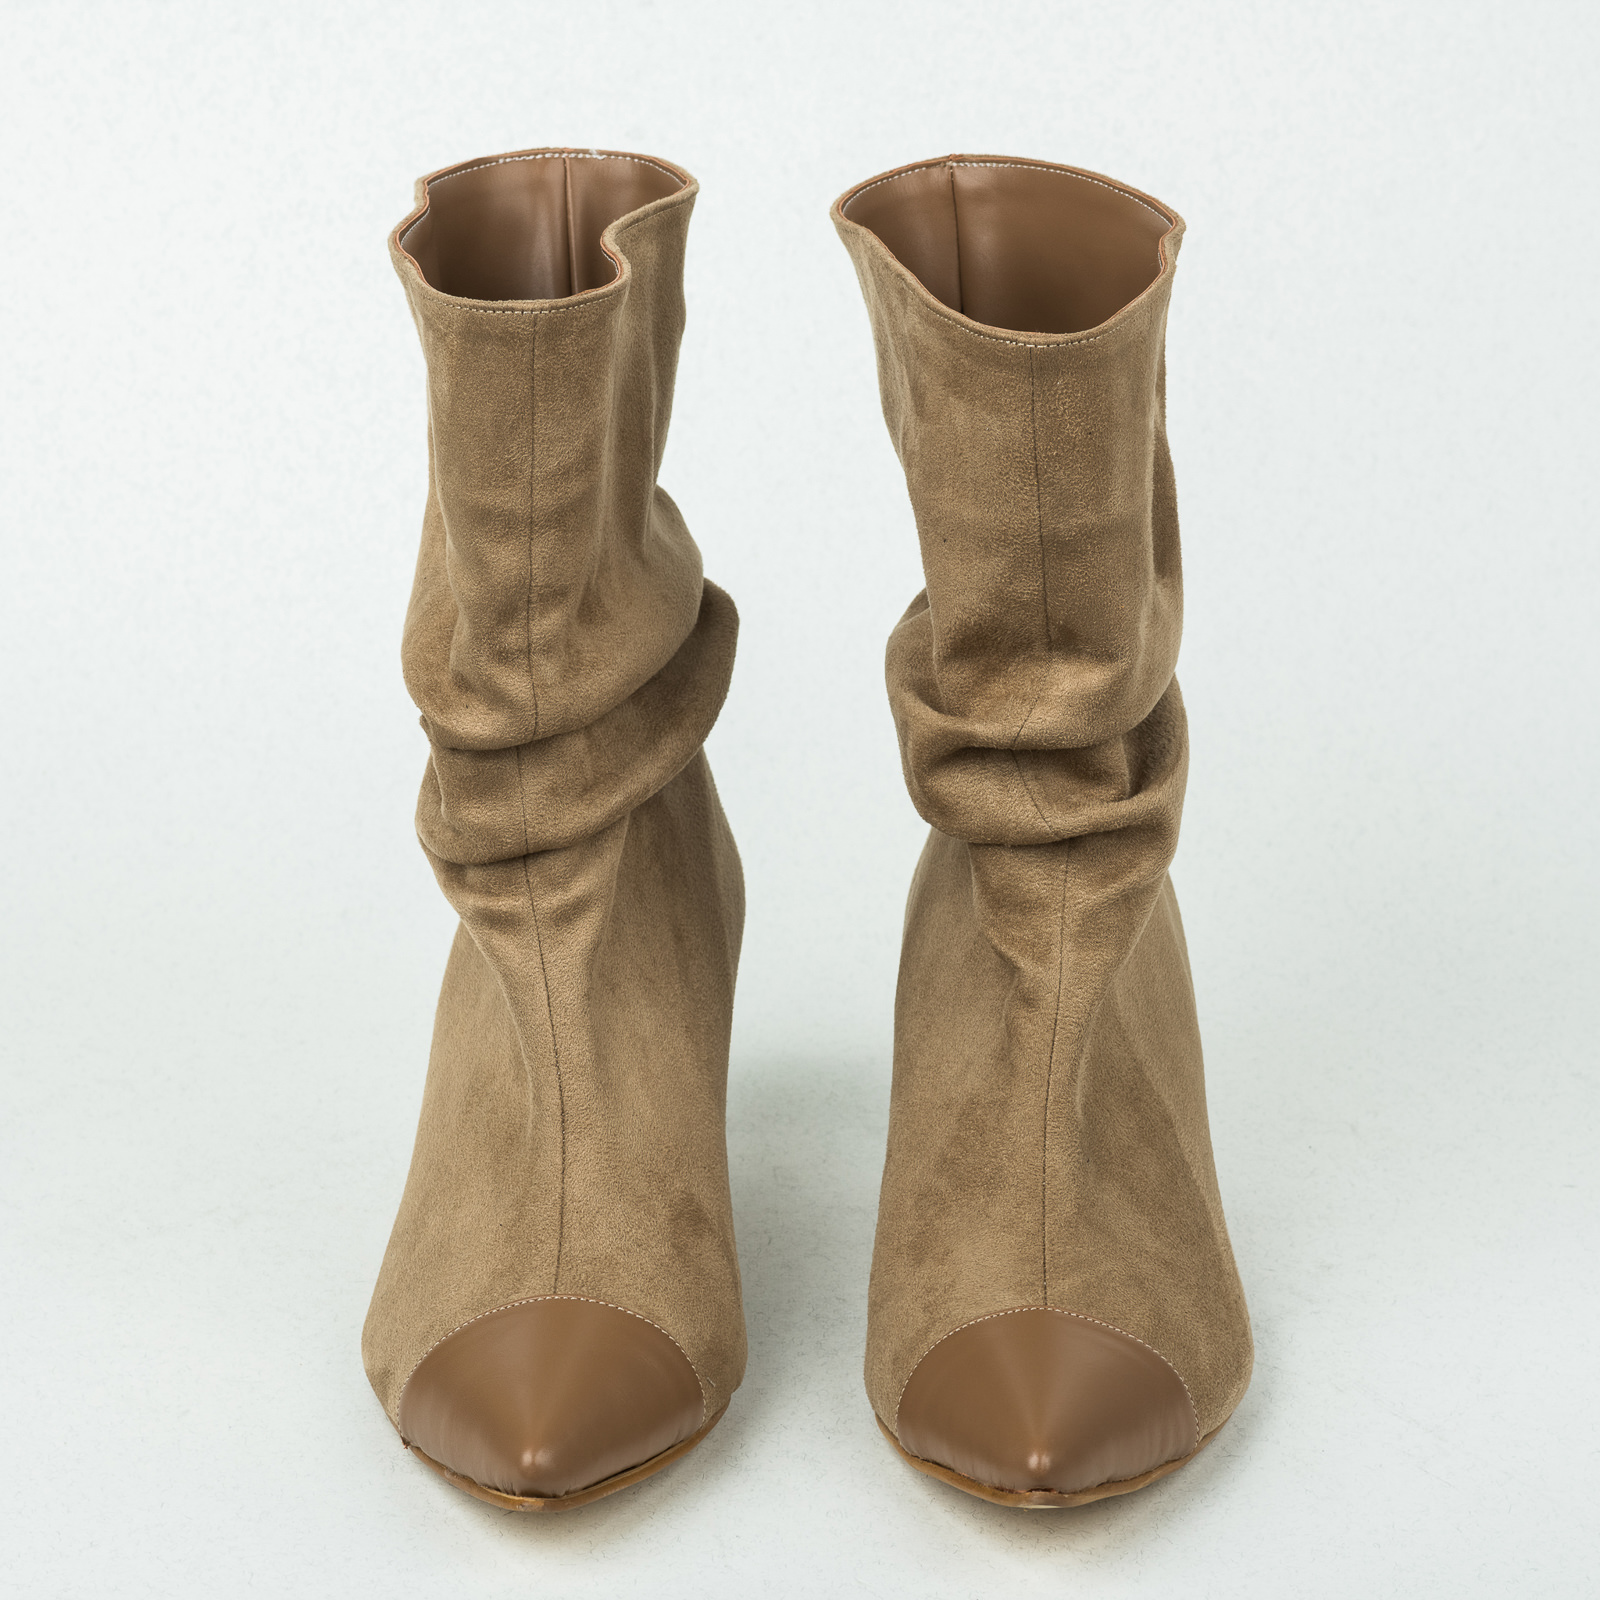 Women ankle boots B238 - BEIGE